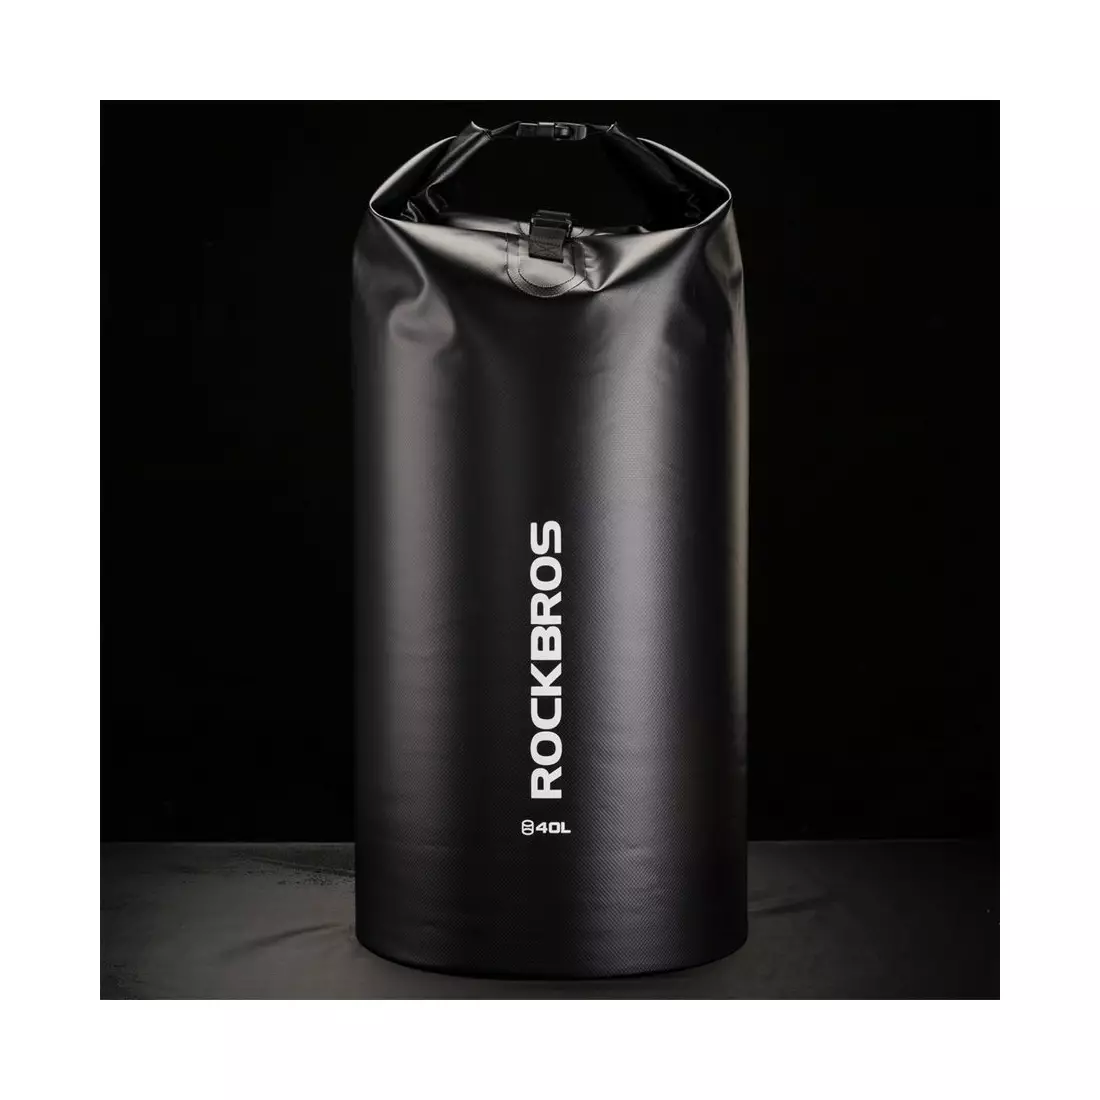 Rockbros rucsac / geantă impermeabilă 40L, negru ST-007BK